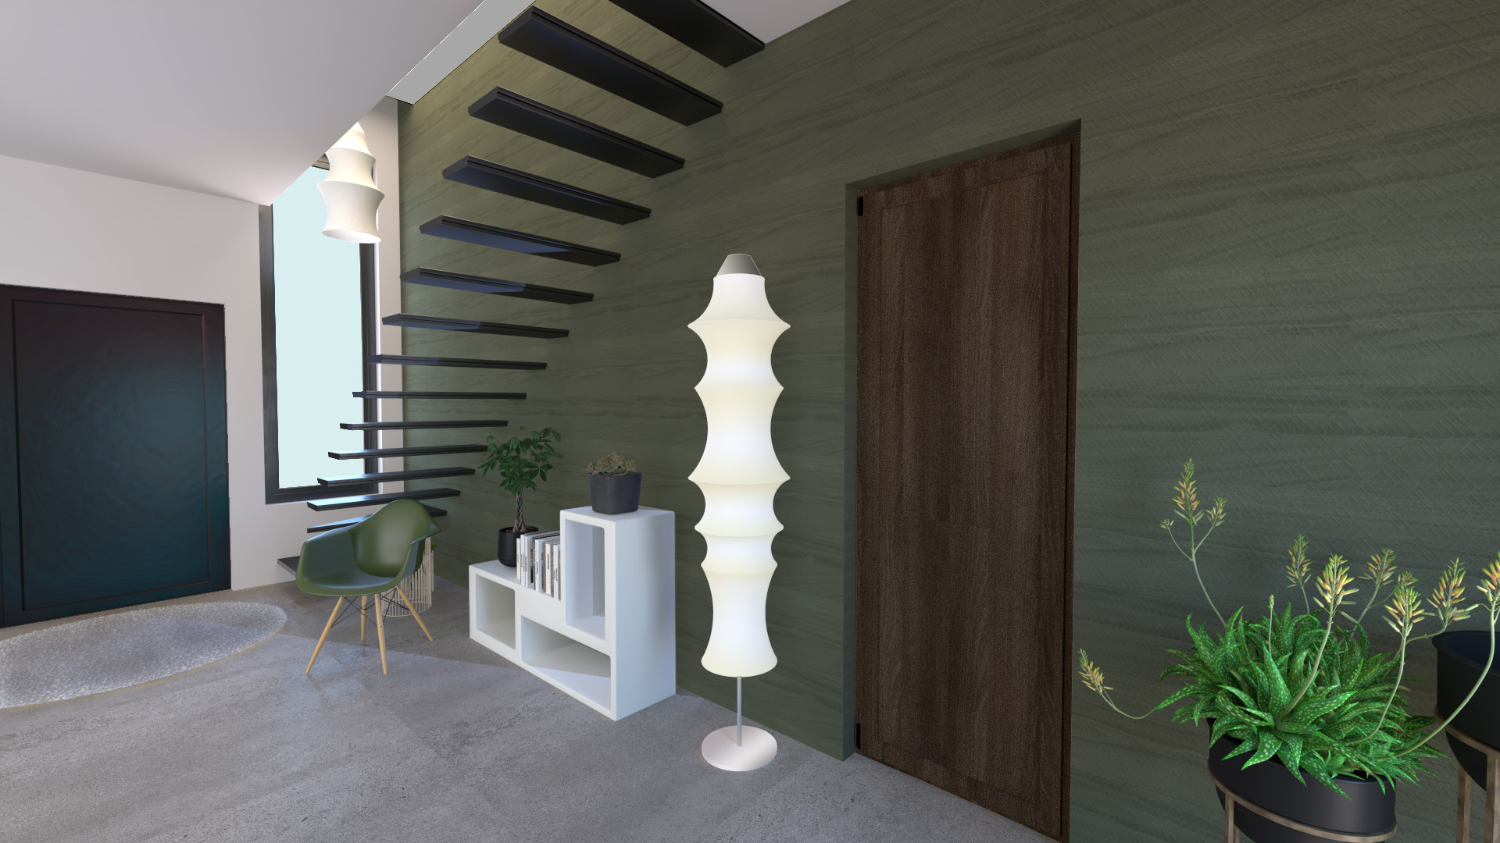 Rendu photoréaliste du revêtement en bois du mur de l'escalier ; projet réalisé par le studio Elles Interior Design.